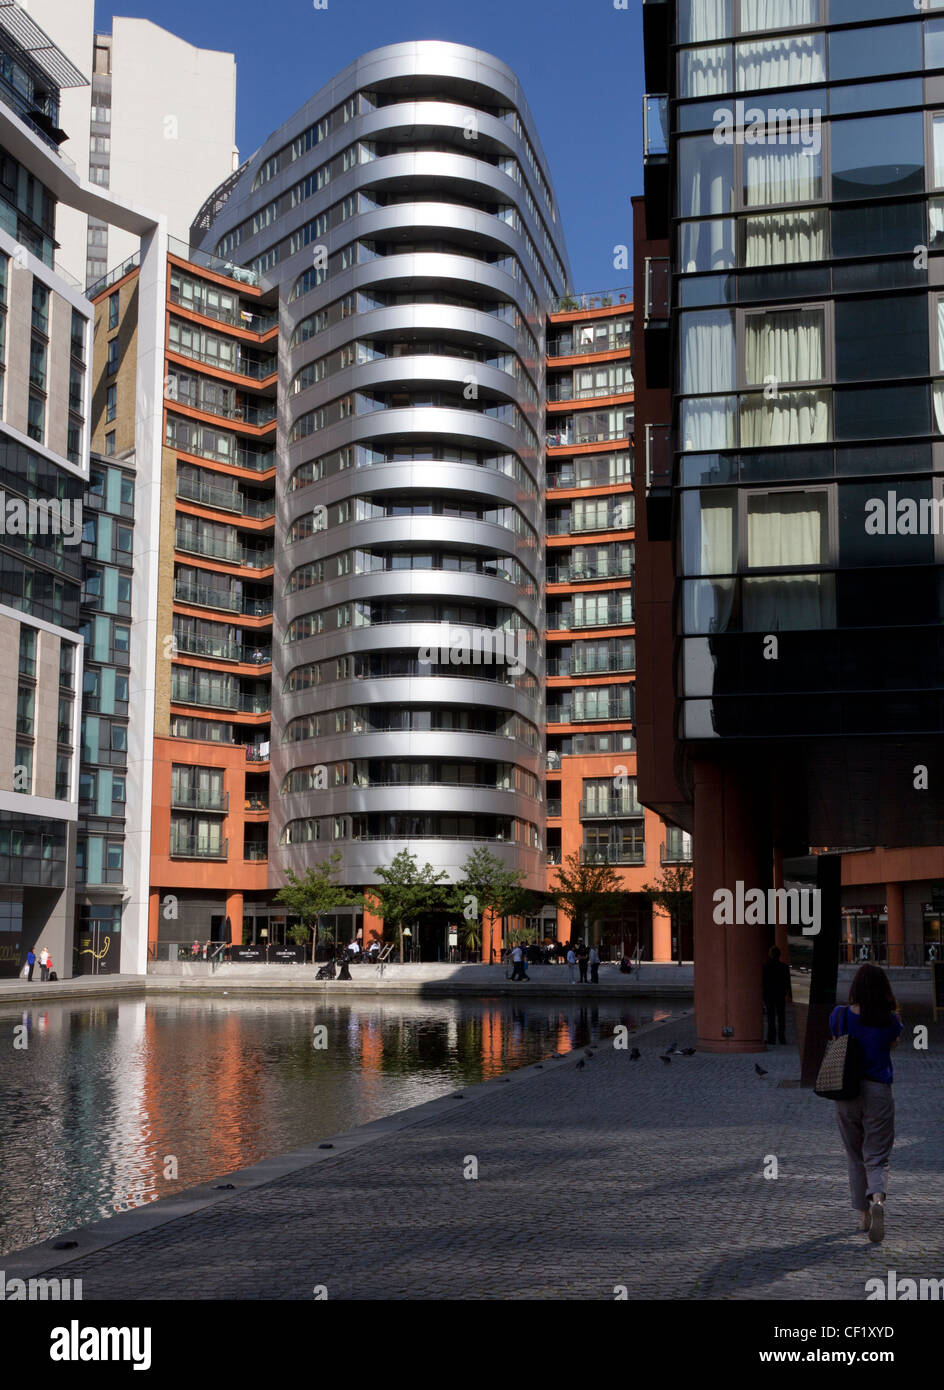 L'architettura del West End Quay a Paddington Basin, parte di Paddington Waterside sviluppo Foto Stock